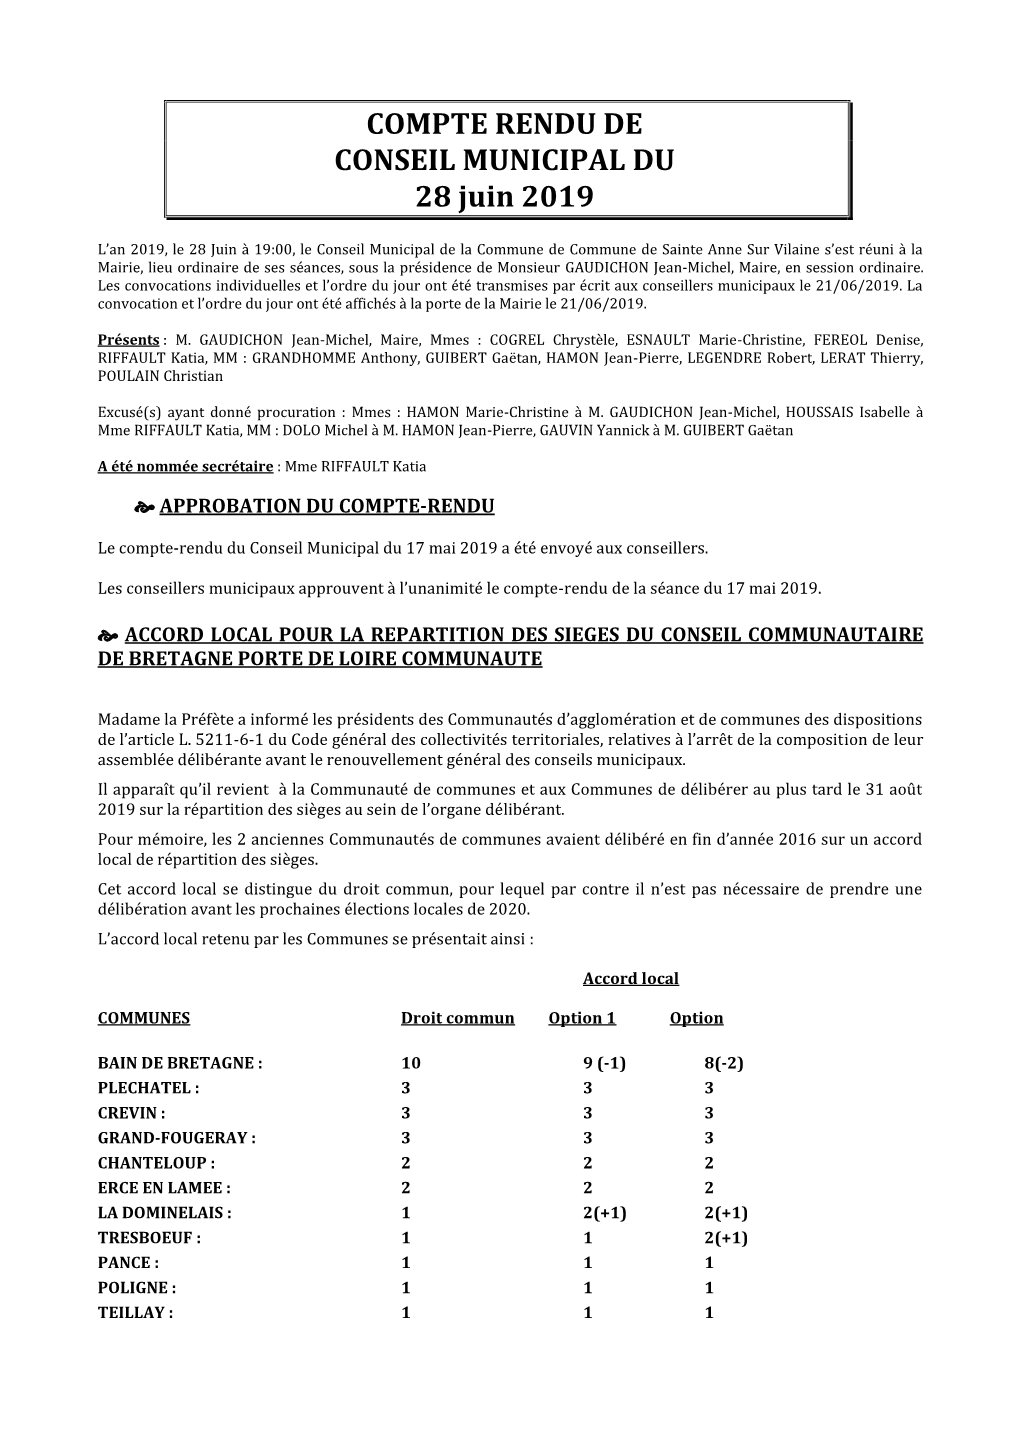 COMPTE RENDU DE CONSEIL MUNICIPAL DU 28 Juin 2019